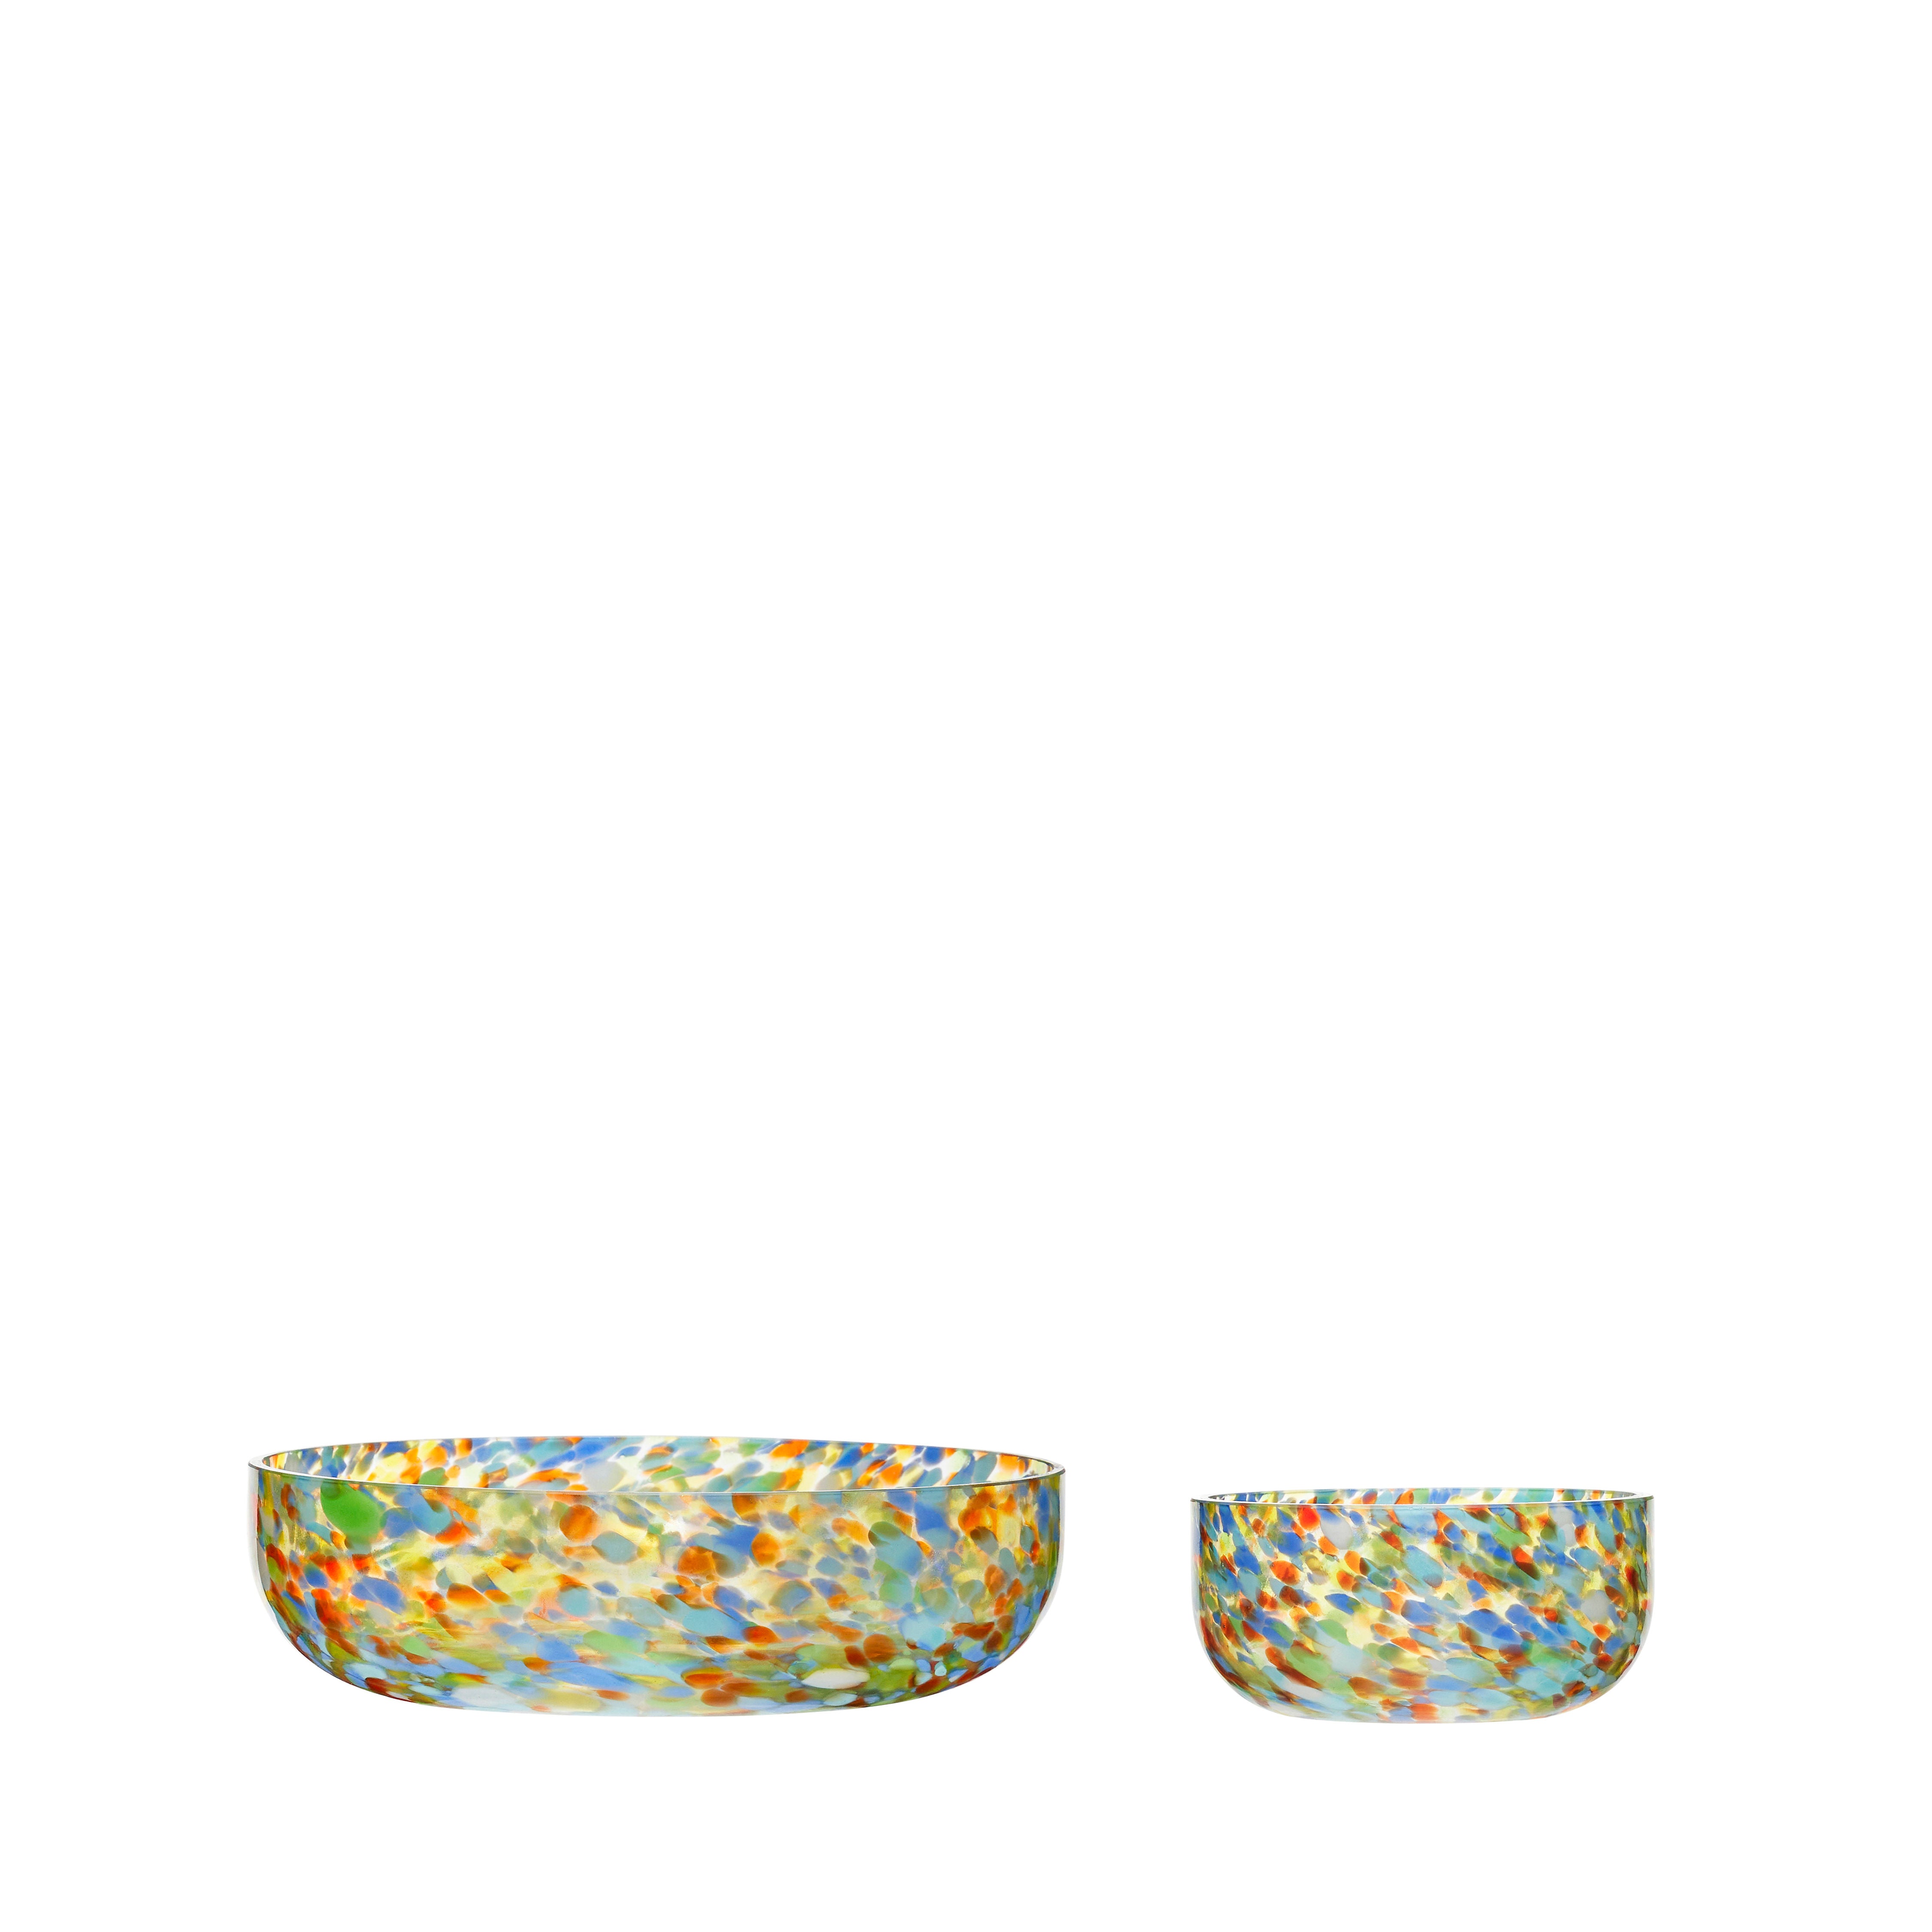 Multicolored Confetti Bowls (set of 2)